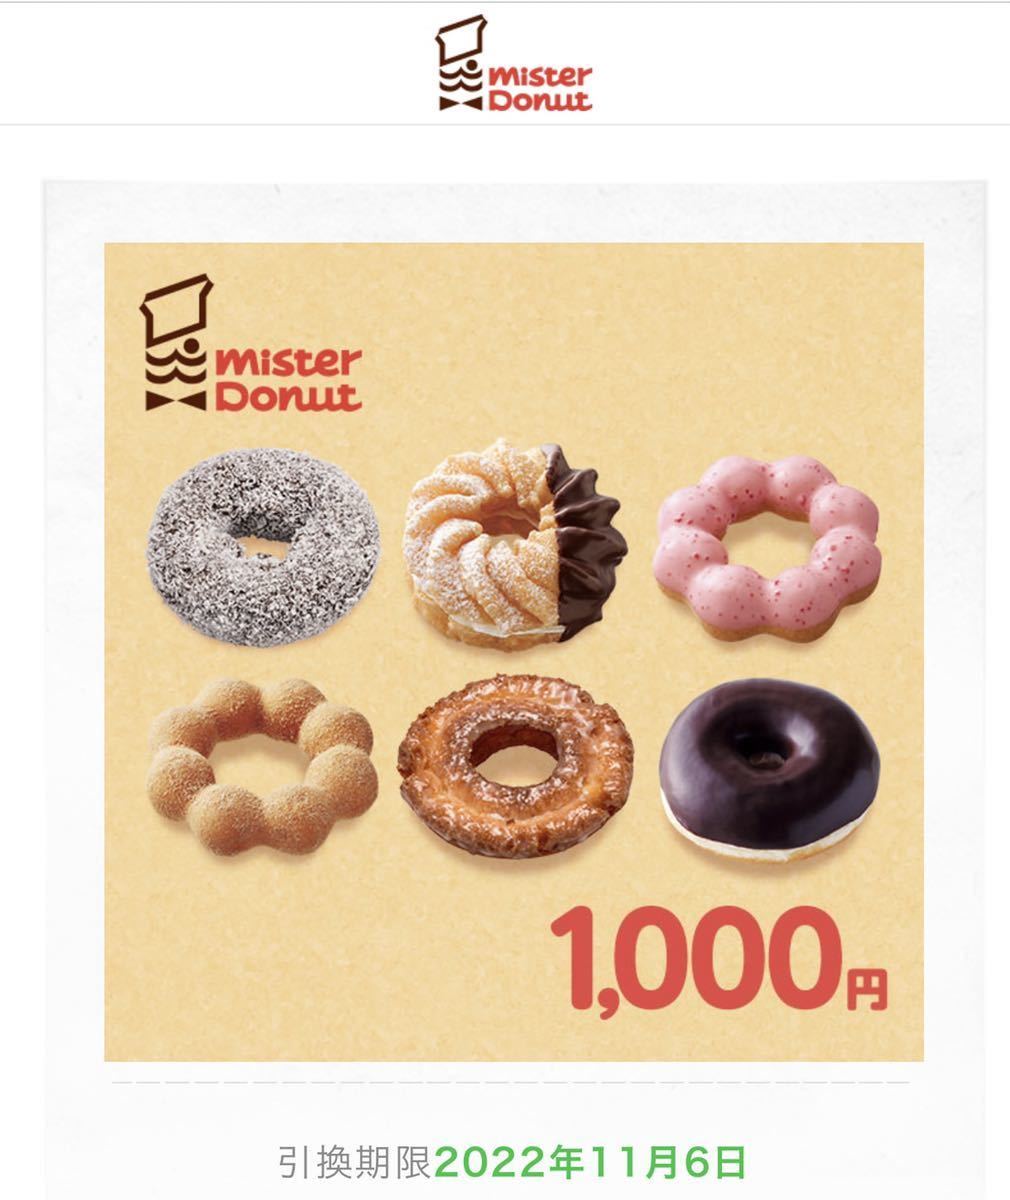  Mister Donut подарочный сертификат 1000 иен минут электронный билет 